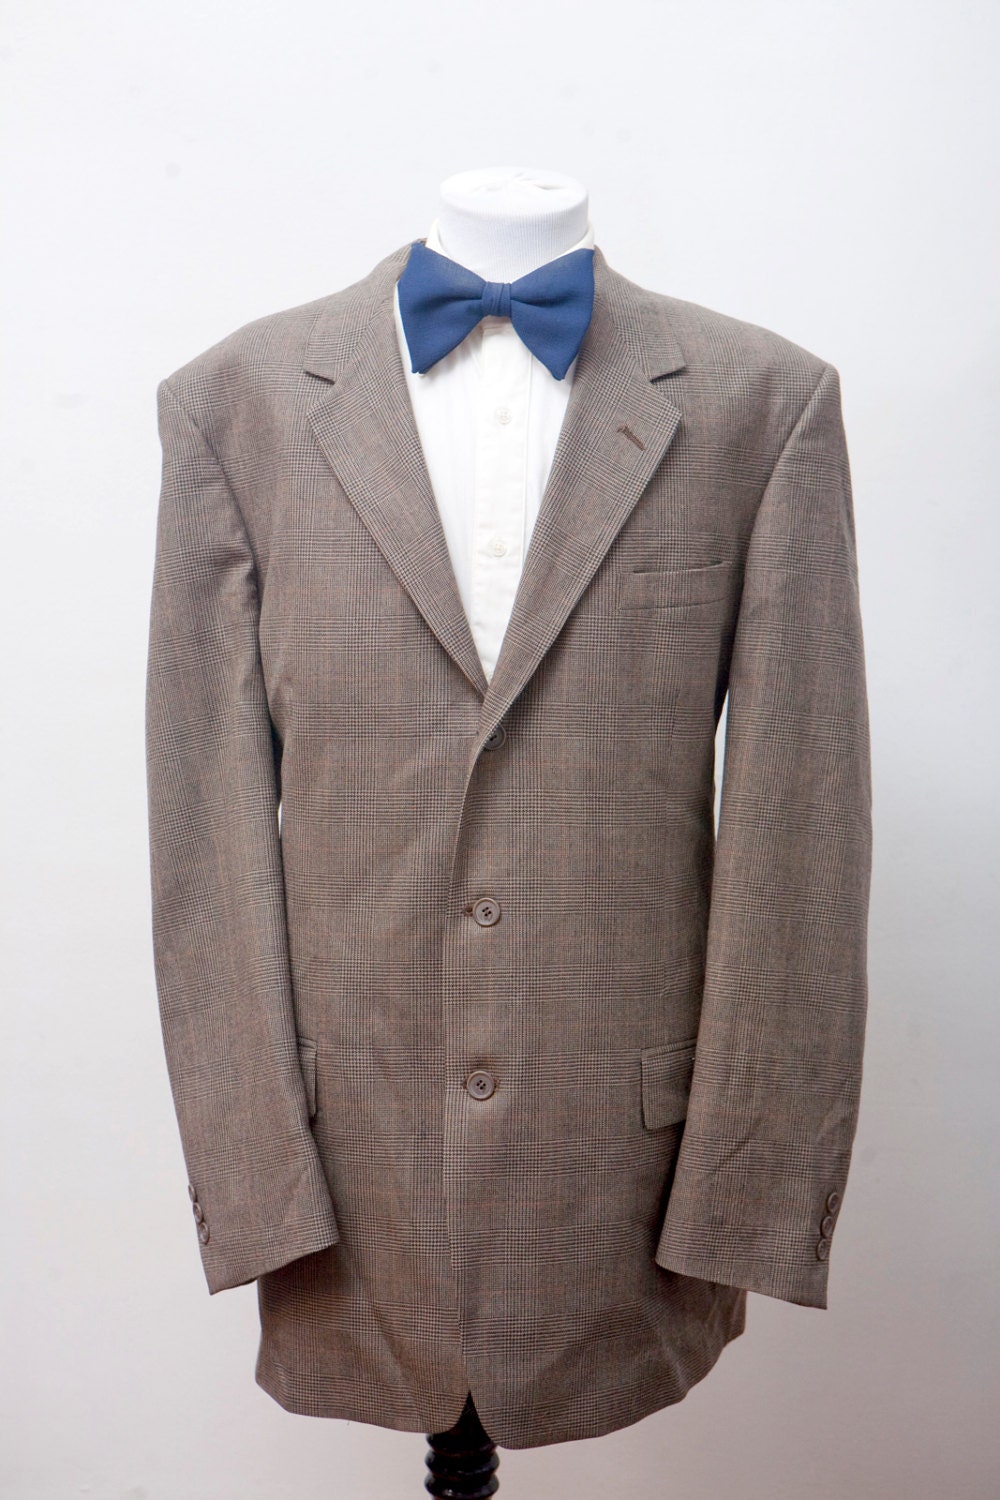 Men's Suit / Vintage Plaid Blazer / Brown Jacket and Trousers / Pierre ...